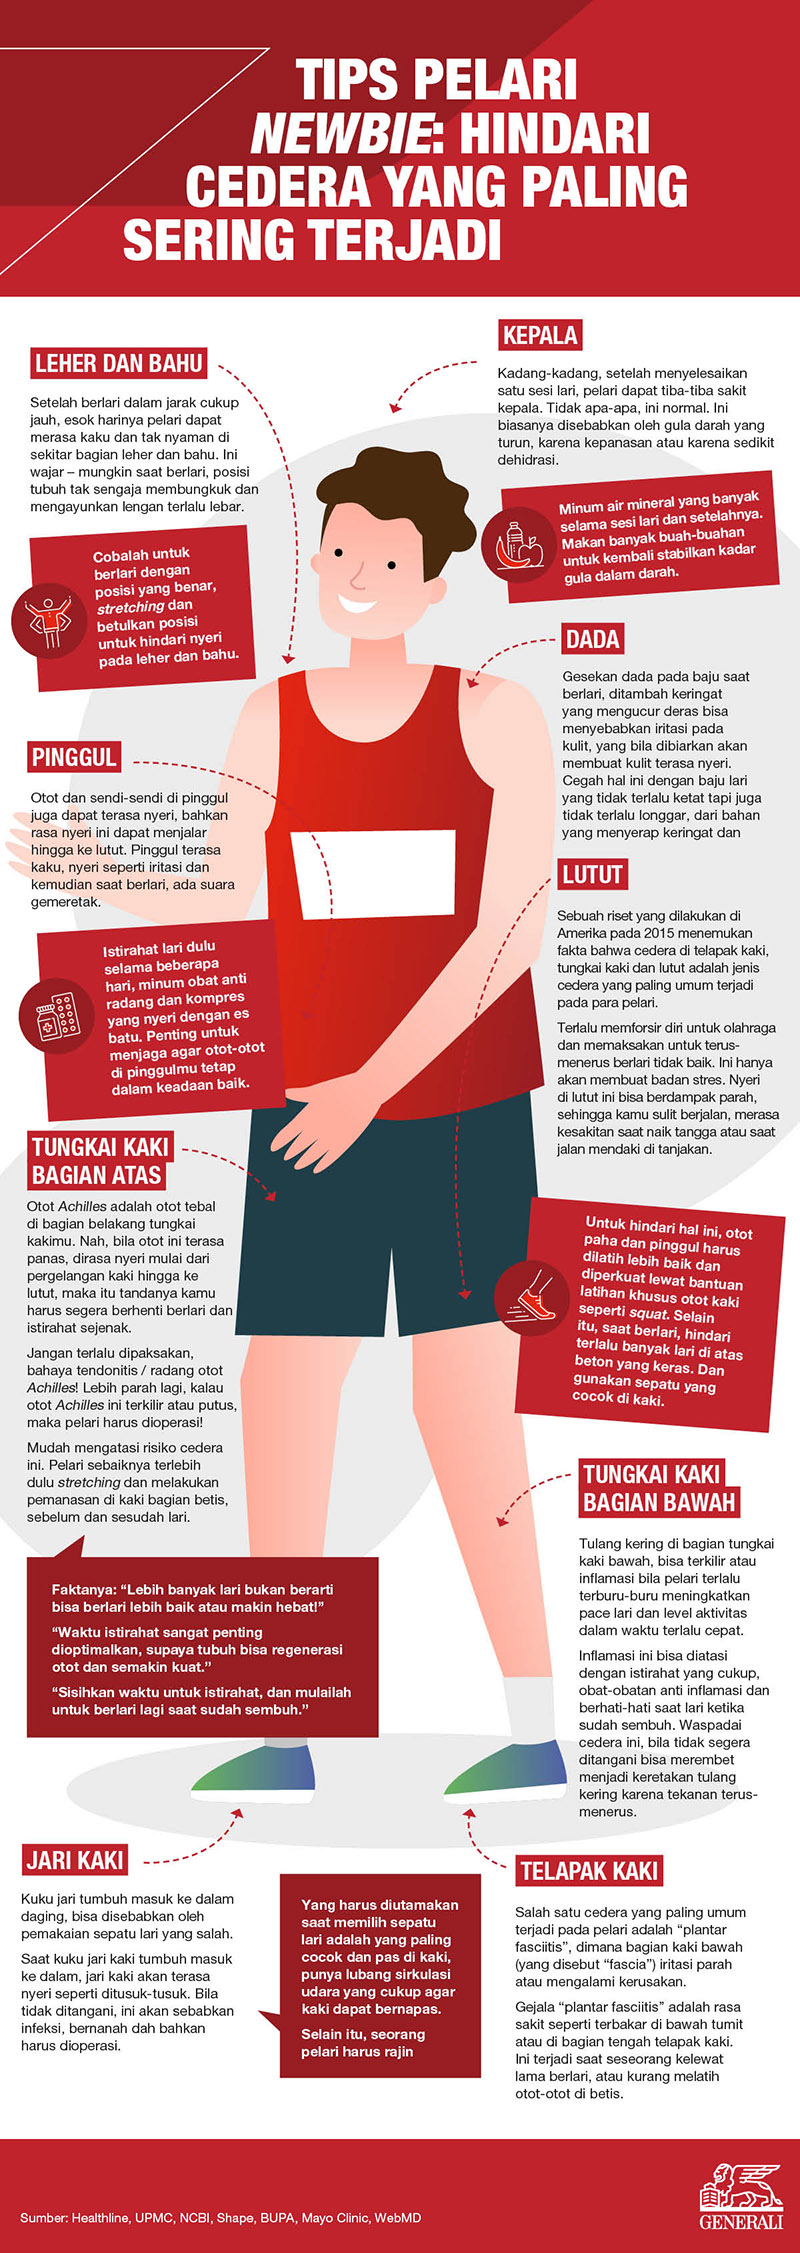 Generali_Running Injuries_Infographic_22.06.21.jpg